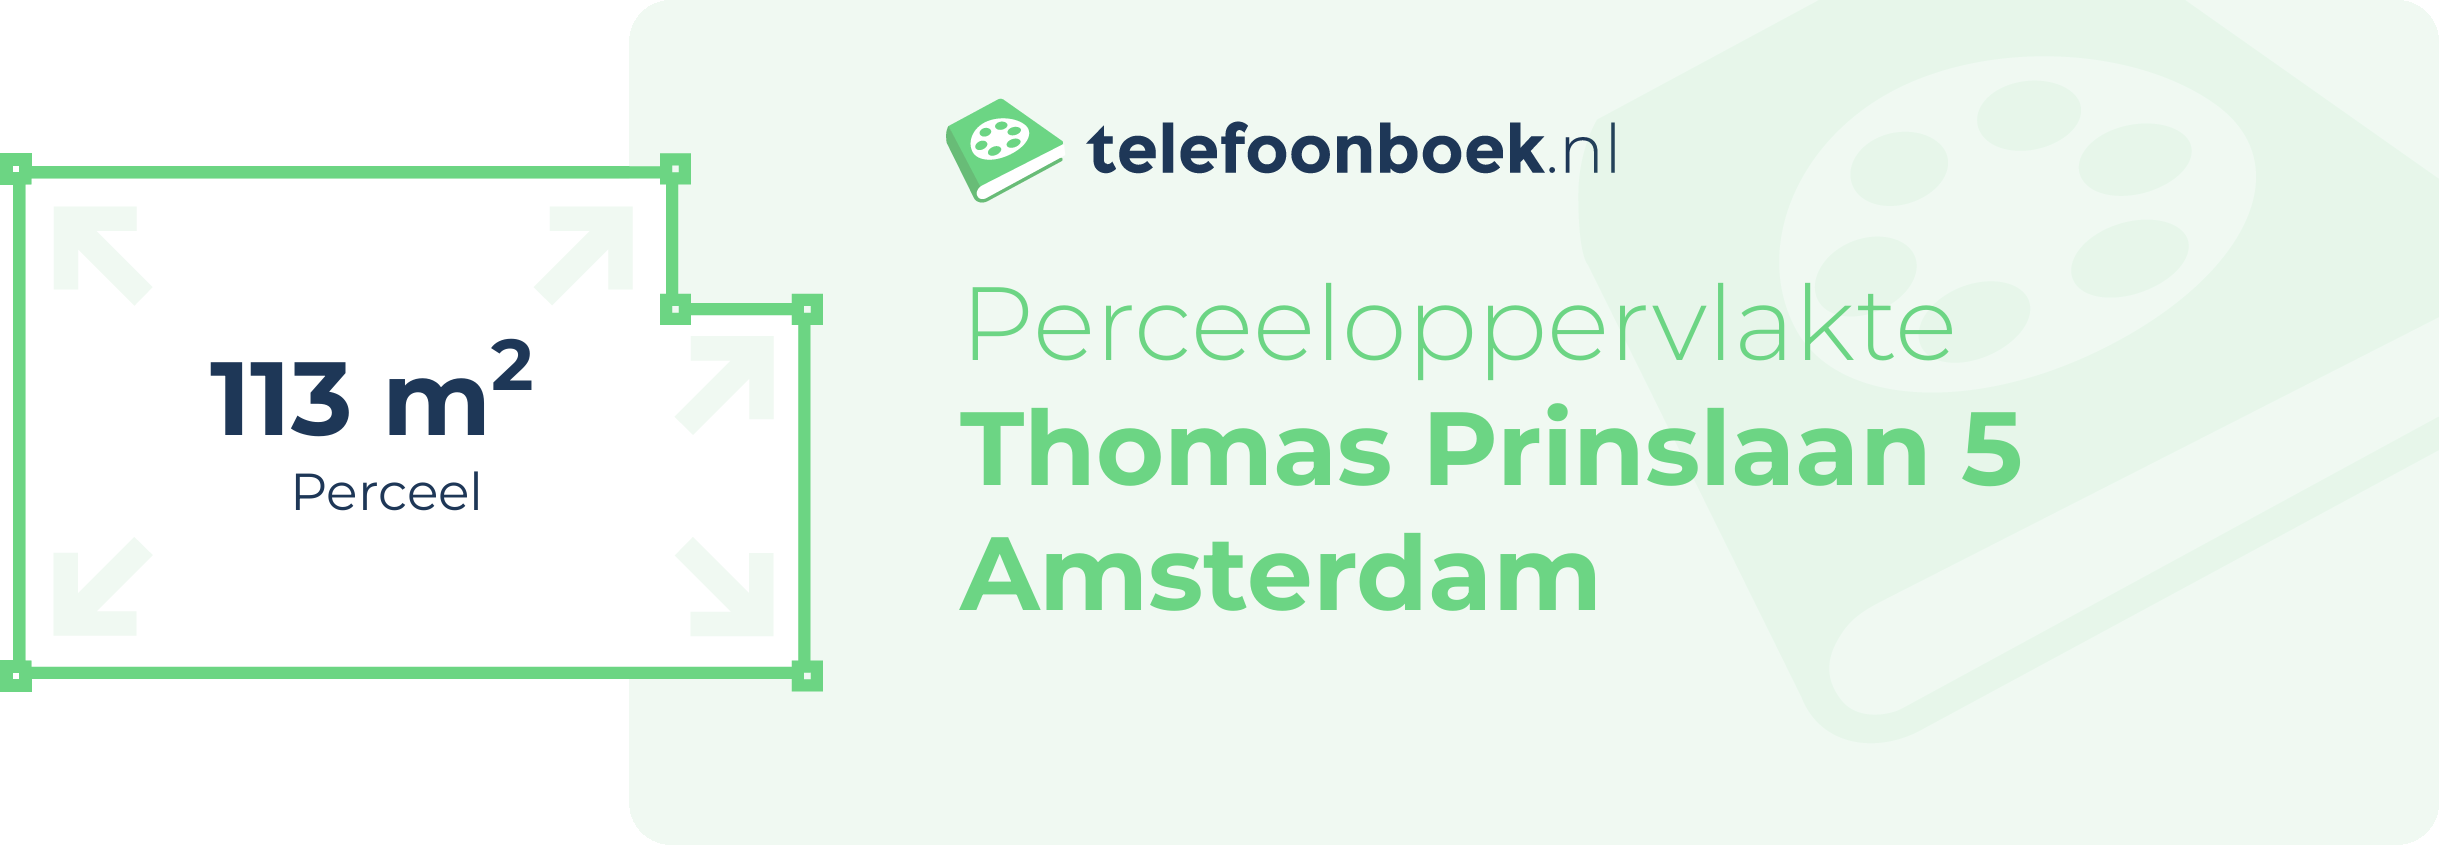 Perceeloppervlakte Thomas Prinslaan 5 Amsterdam